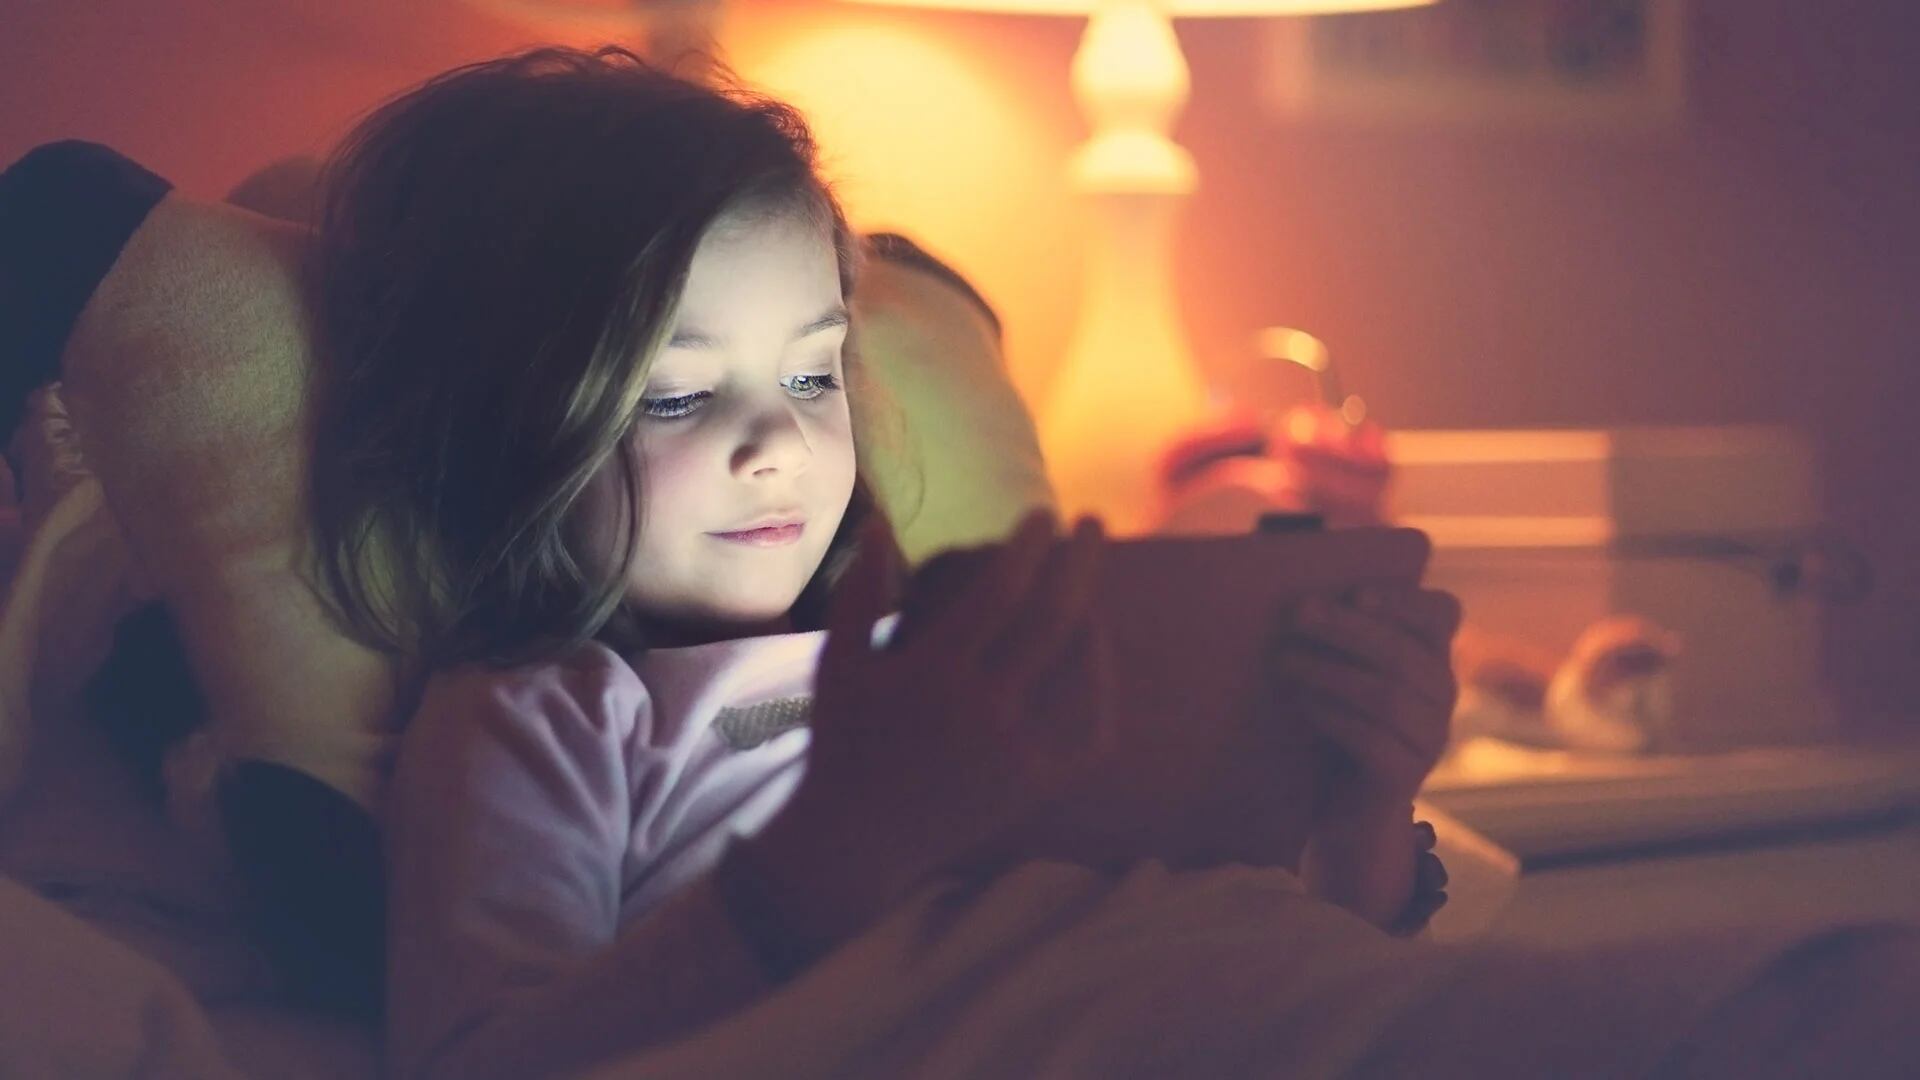 La exposición excesiva a dispositivos digitales puede contribuir a problemas de sueño en la infancia